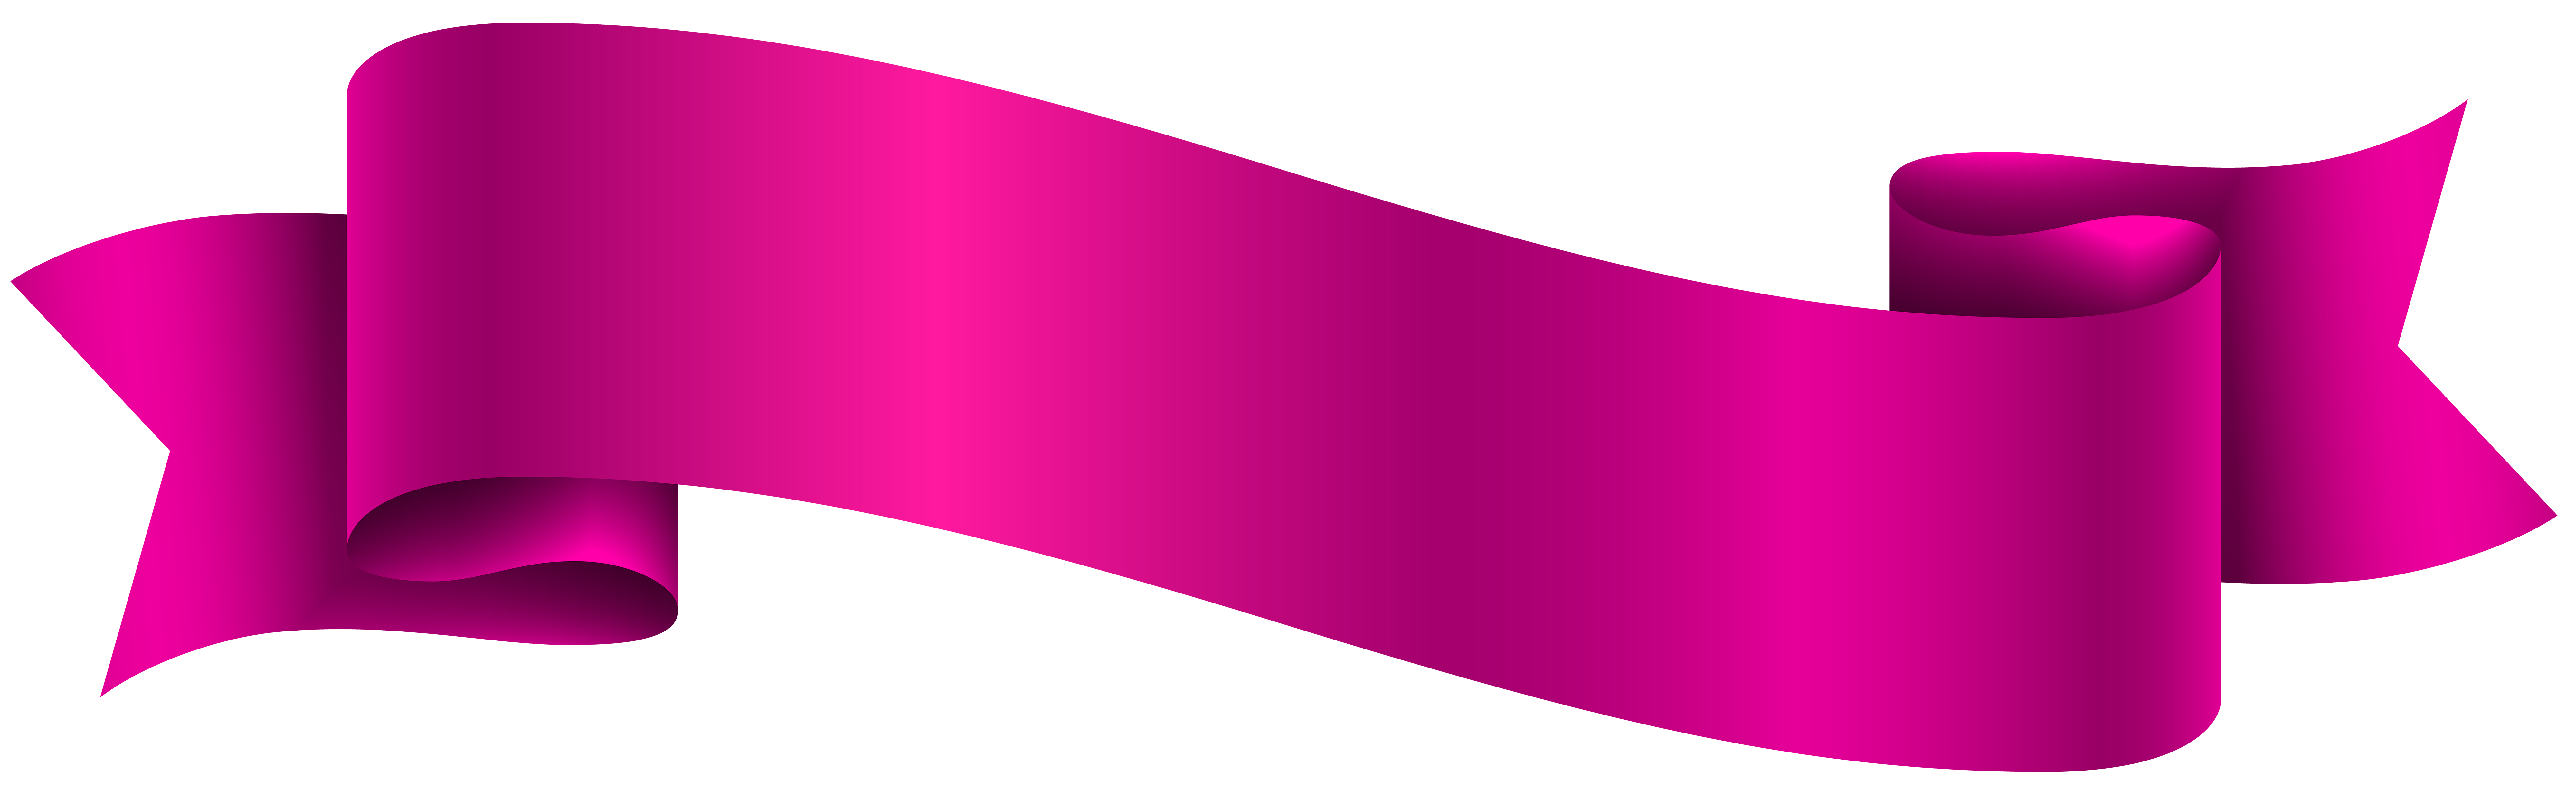 Violet Banner PNG High-Quality Image